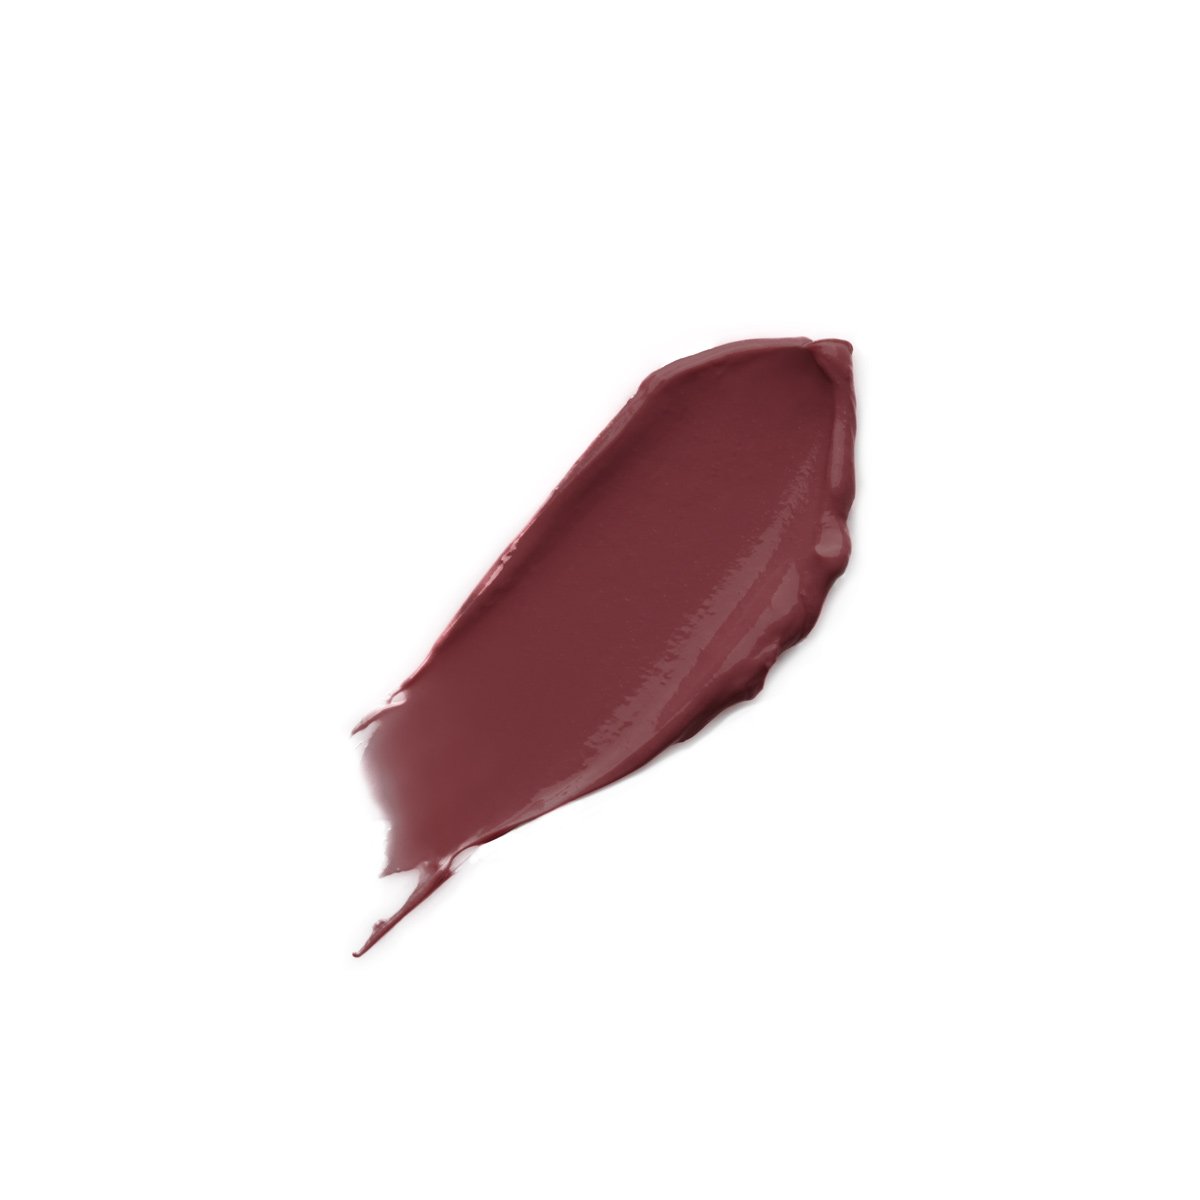 AU COURANT - SHEER BLACKBERRY - sheer blackberry lipstick lip balm